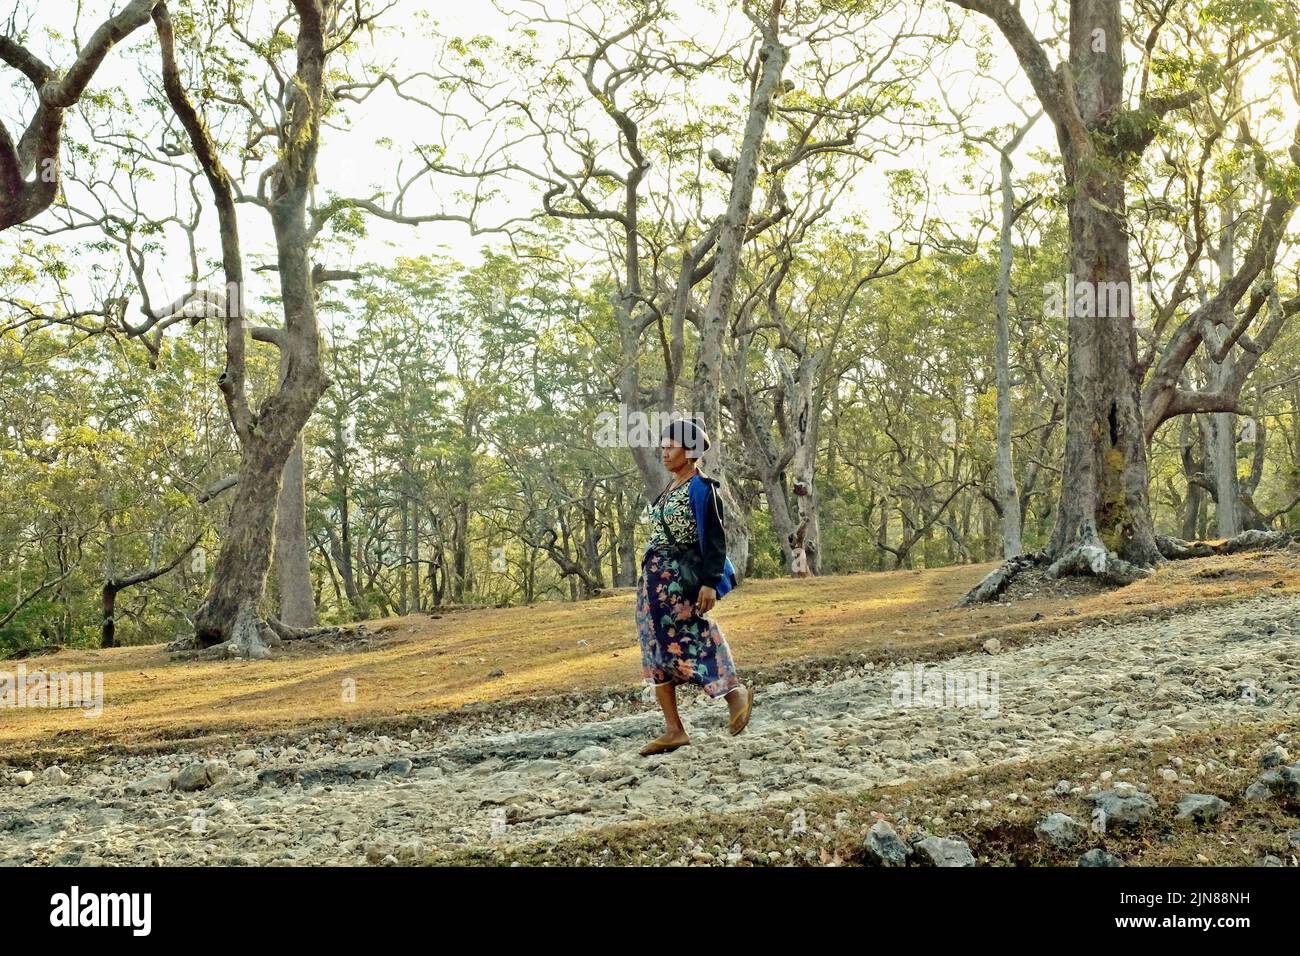 Yuliana Fuka, un villager e una guida ecoturismo part-time, è a piedi su una strada rurale tra la foresta vicino Fatumnasi villaggio nel sud centro di Timor, Nusa Tenggara est, Indonesia. Foto Stock